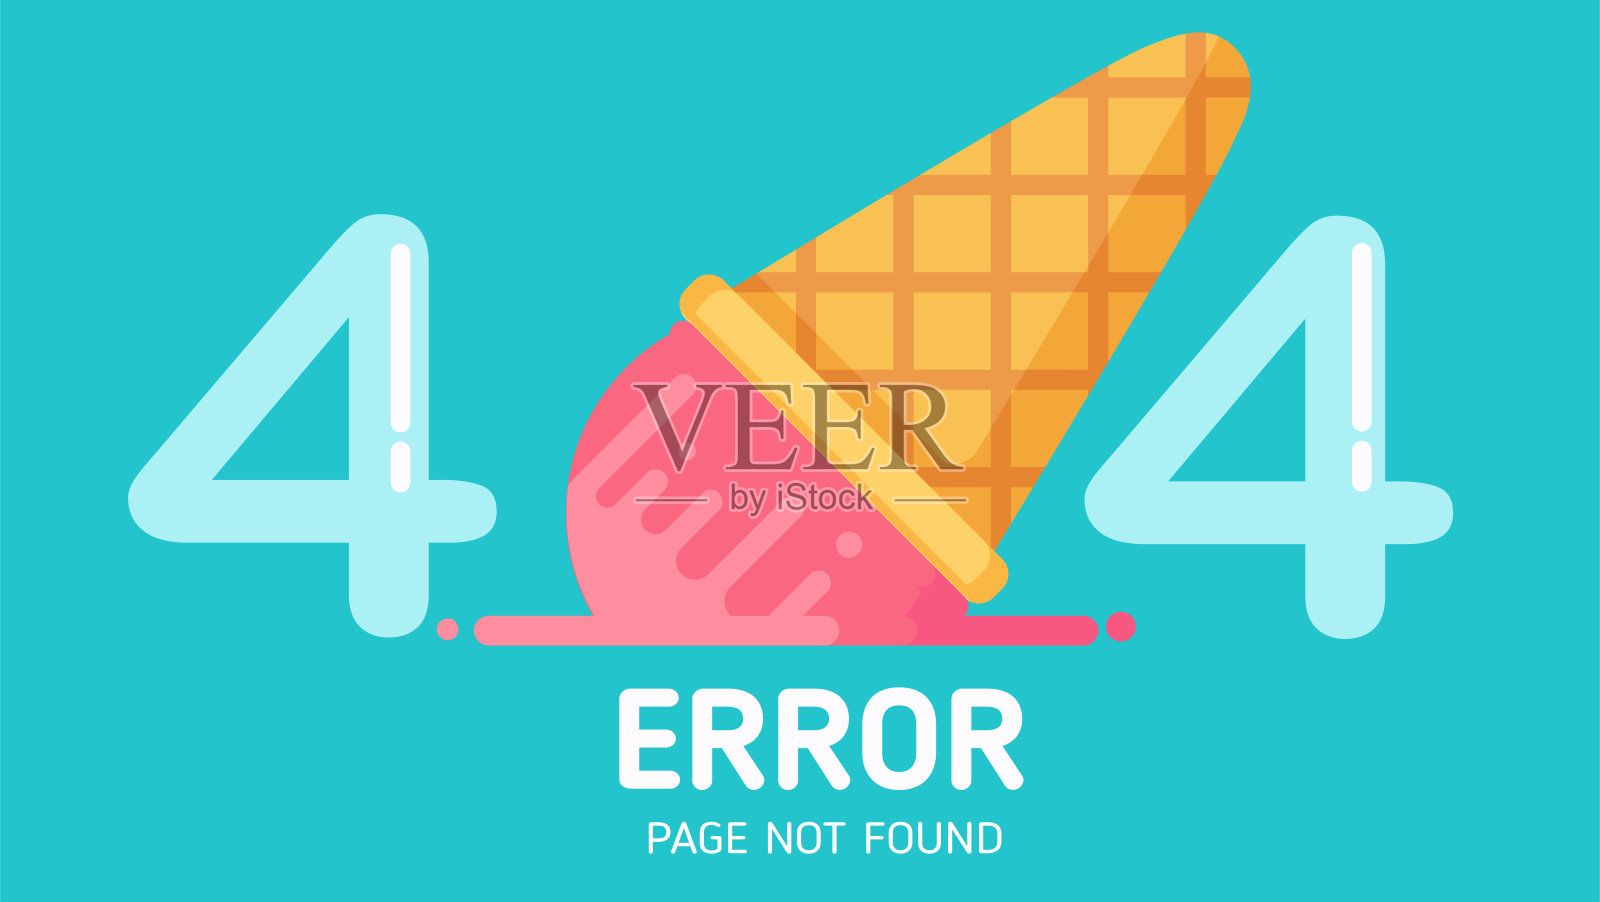 404冰激凌掉落错误页面没有找到矢量蜡笔设计元素图片